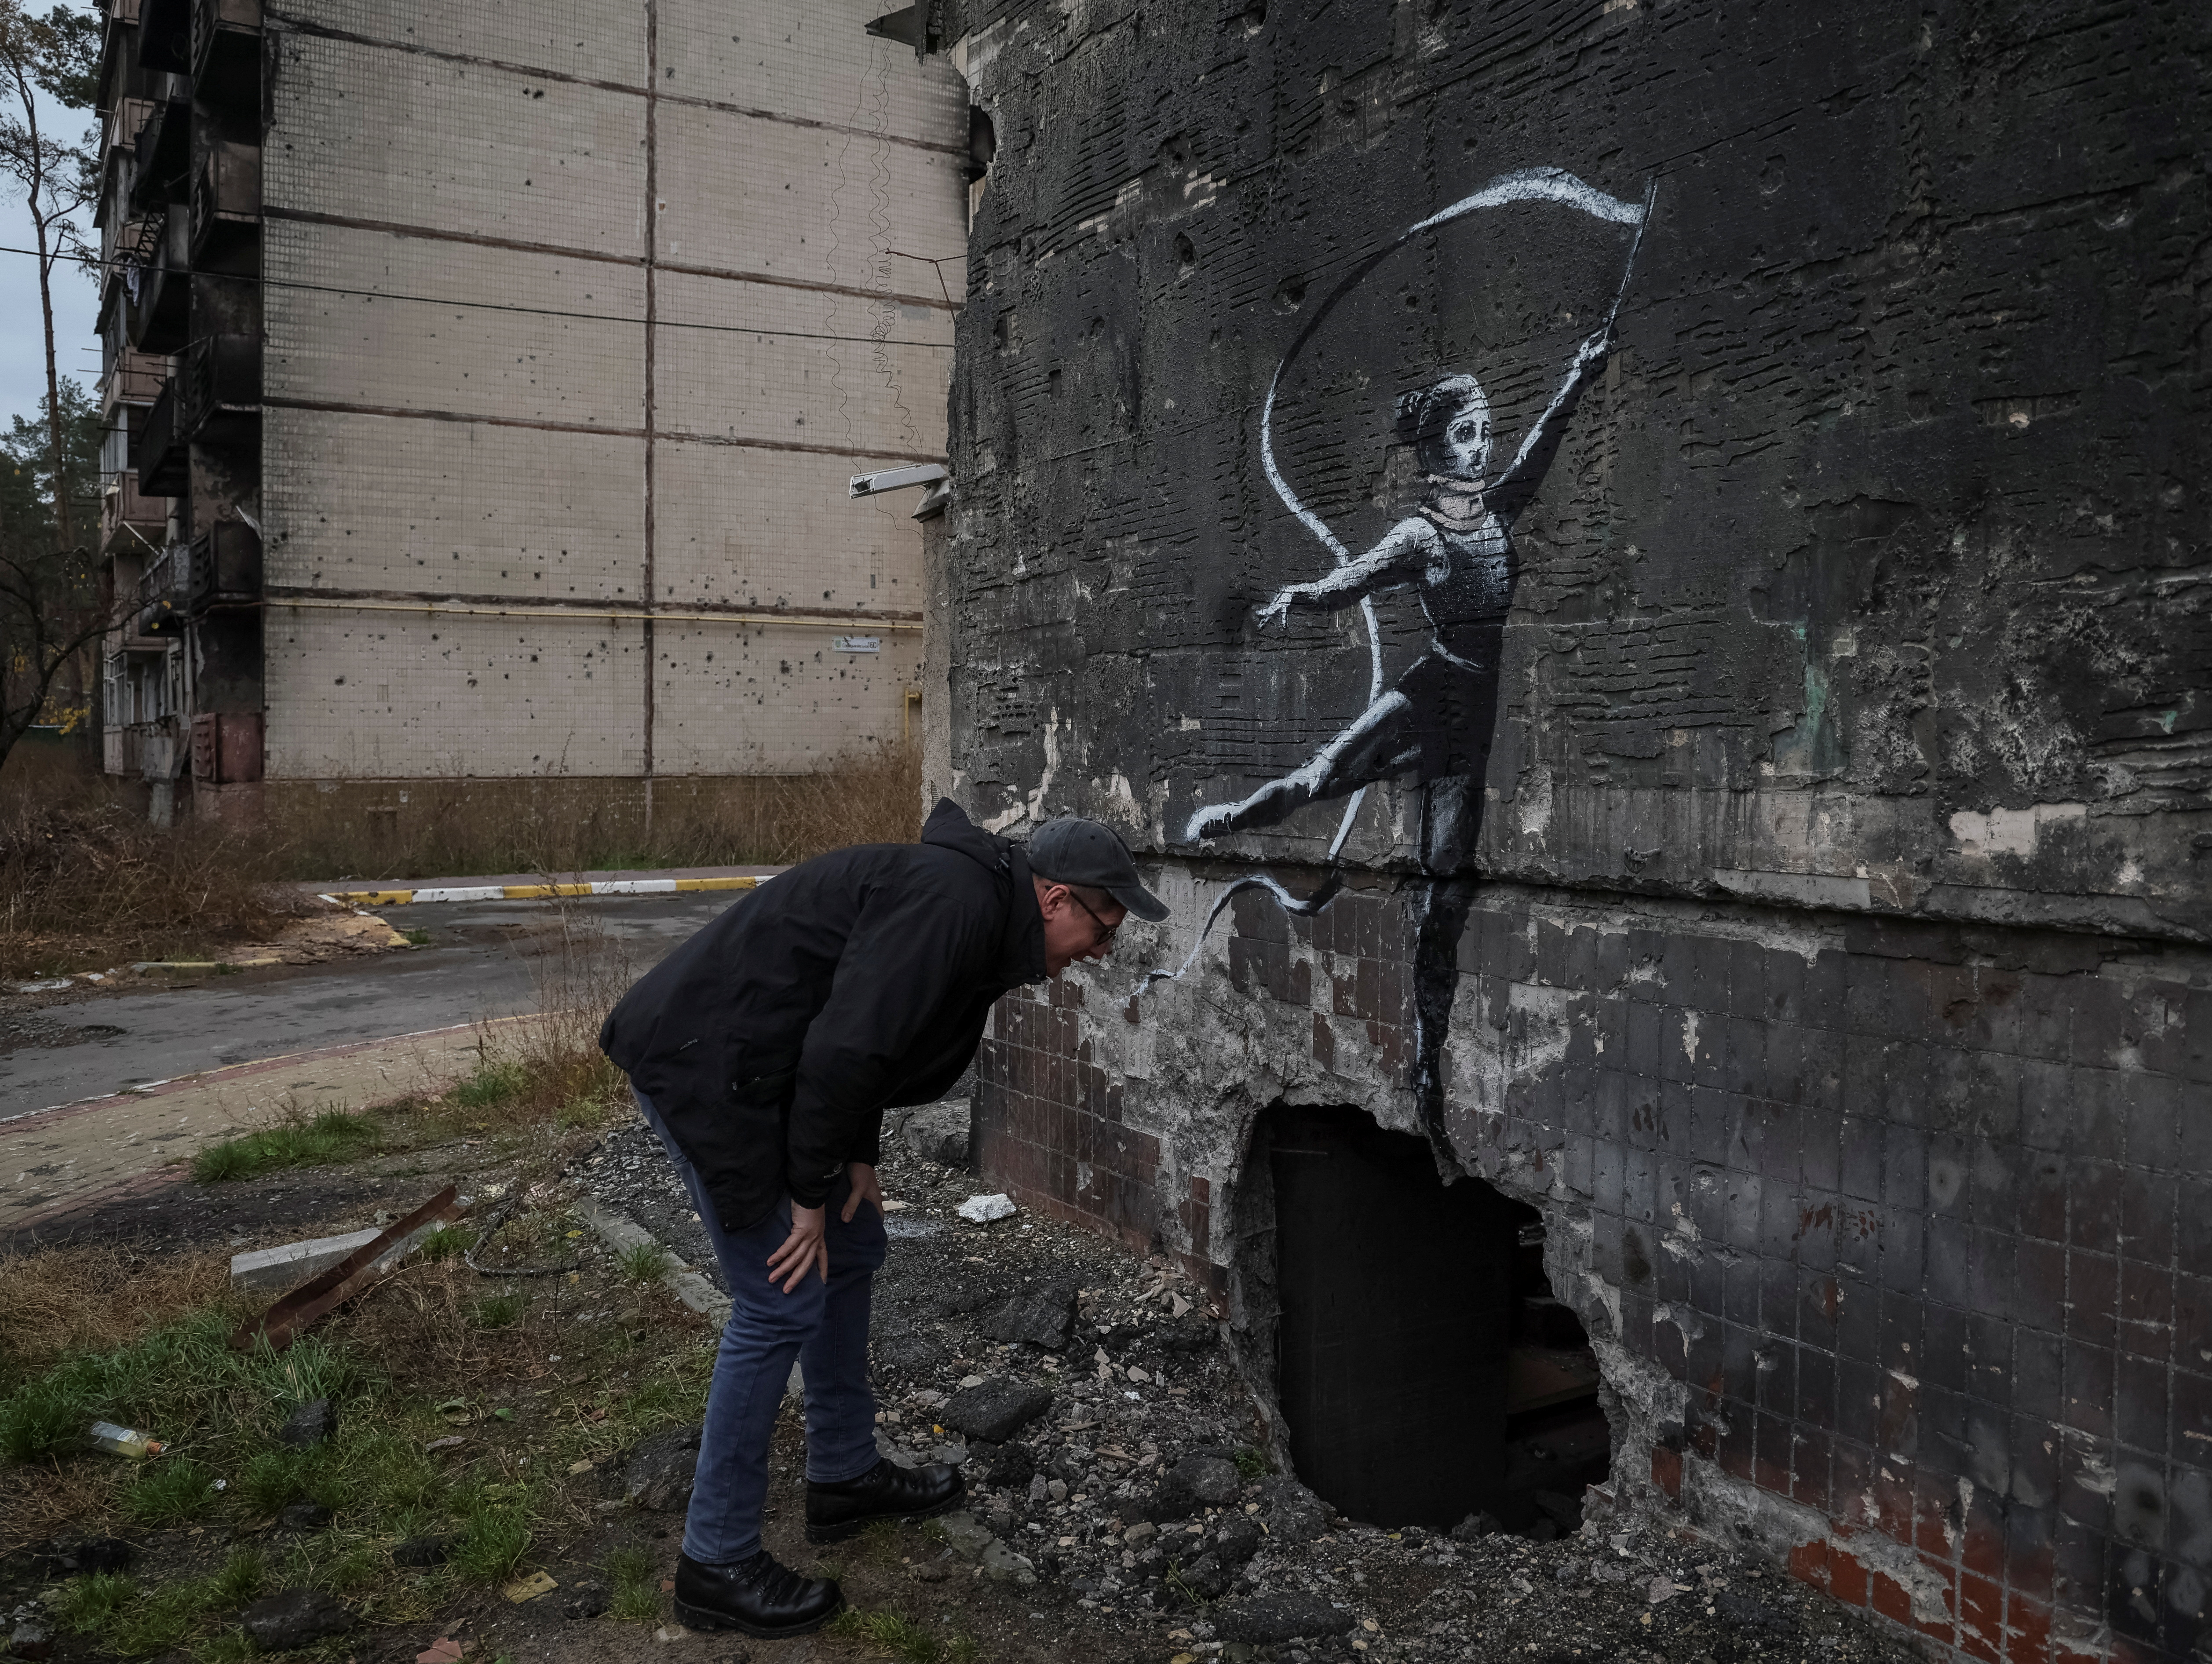 Banksy Street Art Found in Devastated Ukraine Cities - CNET